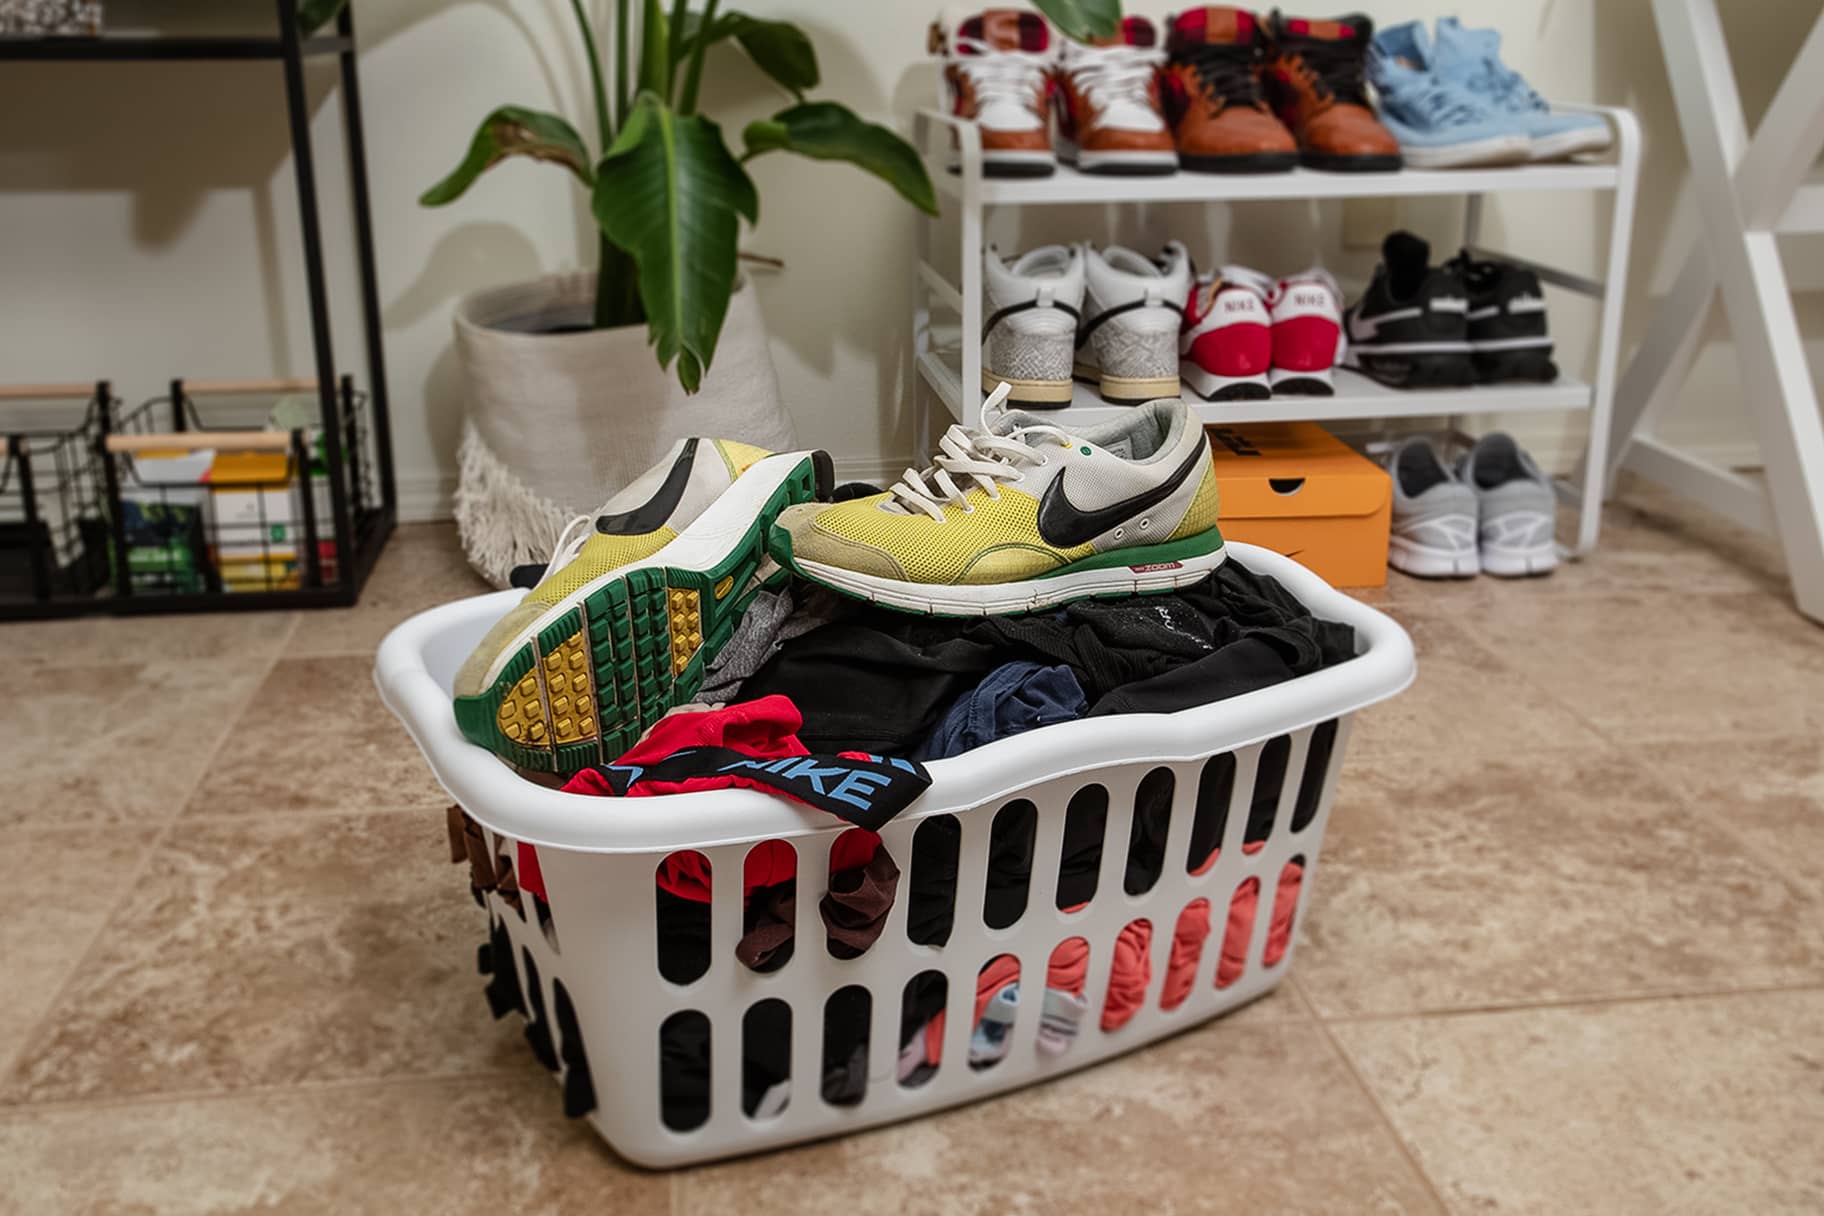 Puoi mettere le sneakers in lavatrice? Ecco il modo migliore per lavare le tue Nike